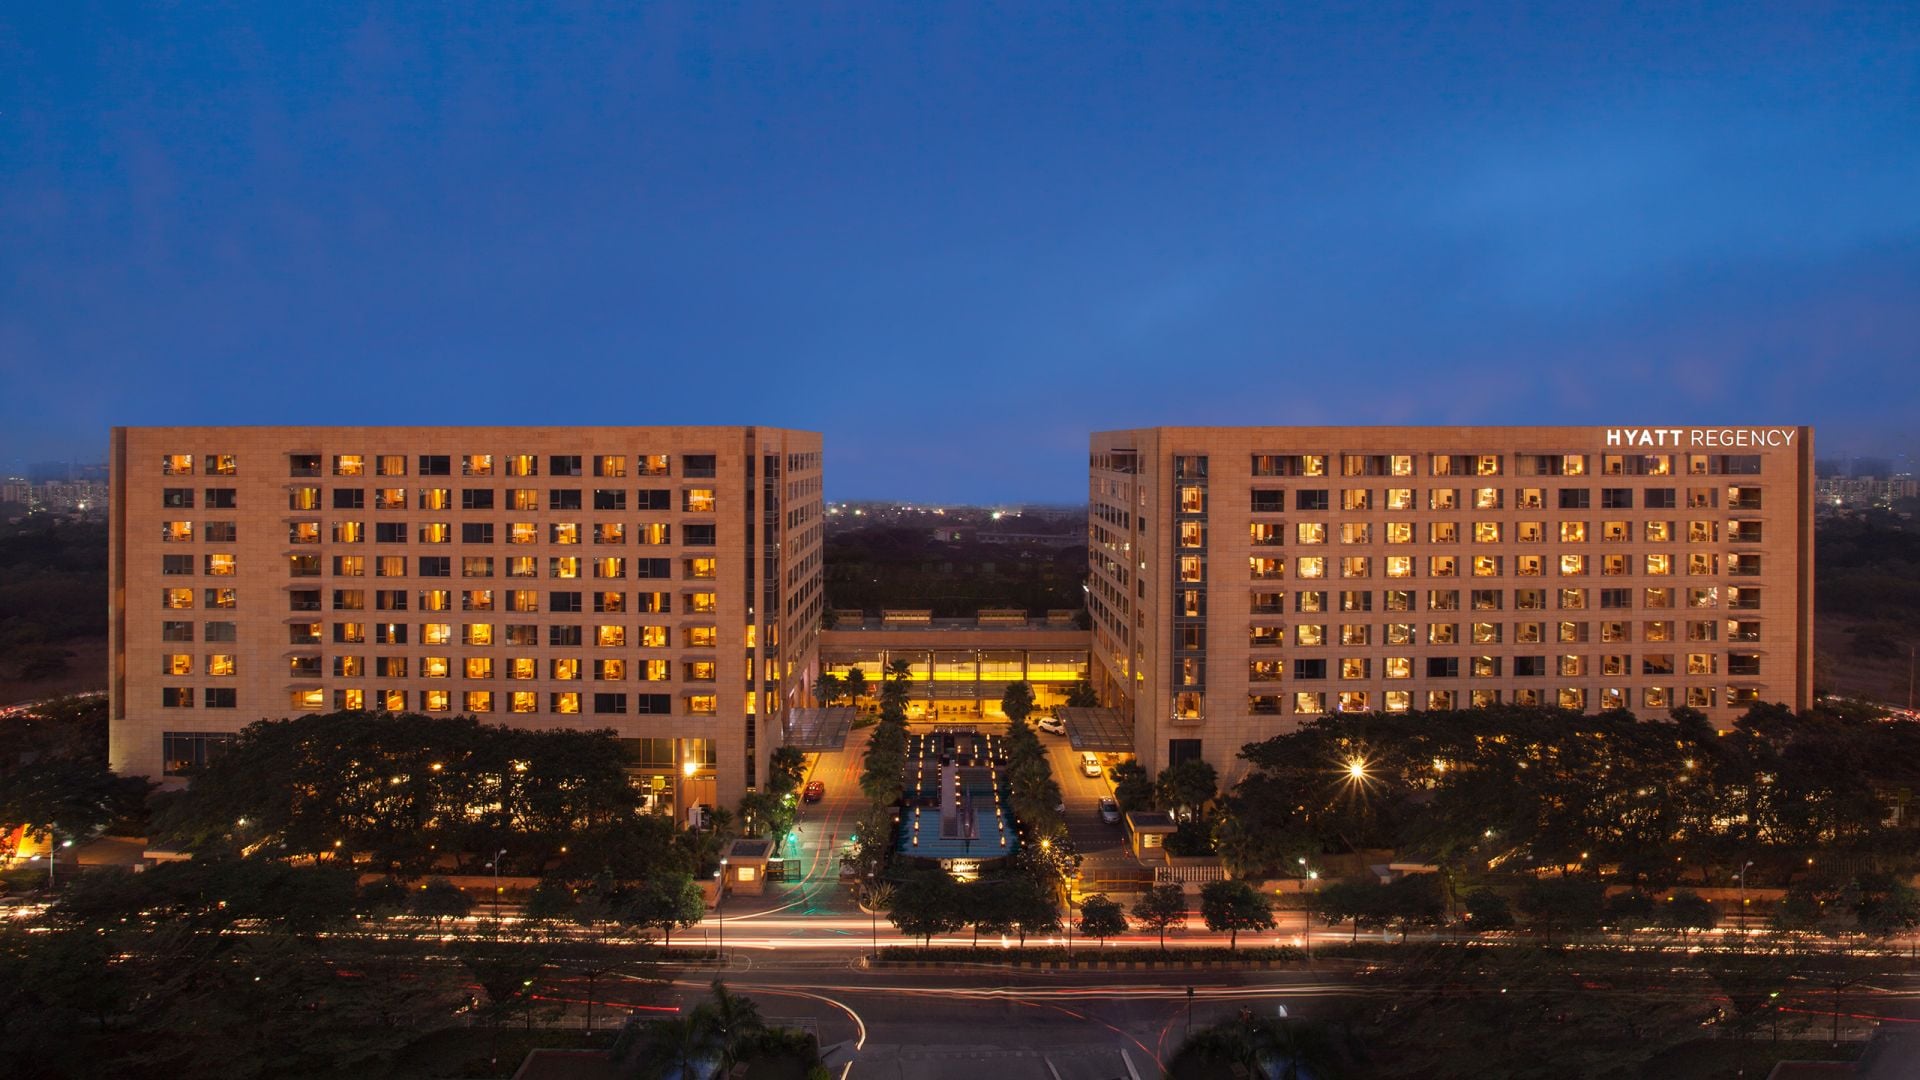 5 Star Hotels in Pune, Luxury Business Hotel Near Airport | Hyatt Regency Pune1920 x 1080